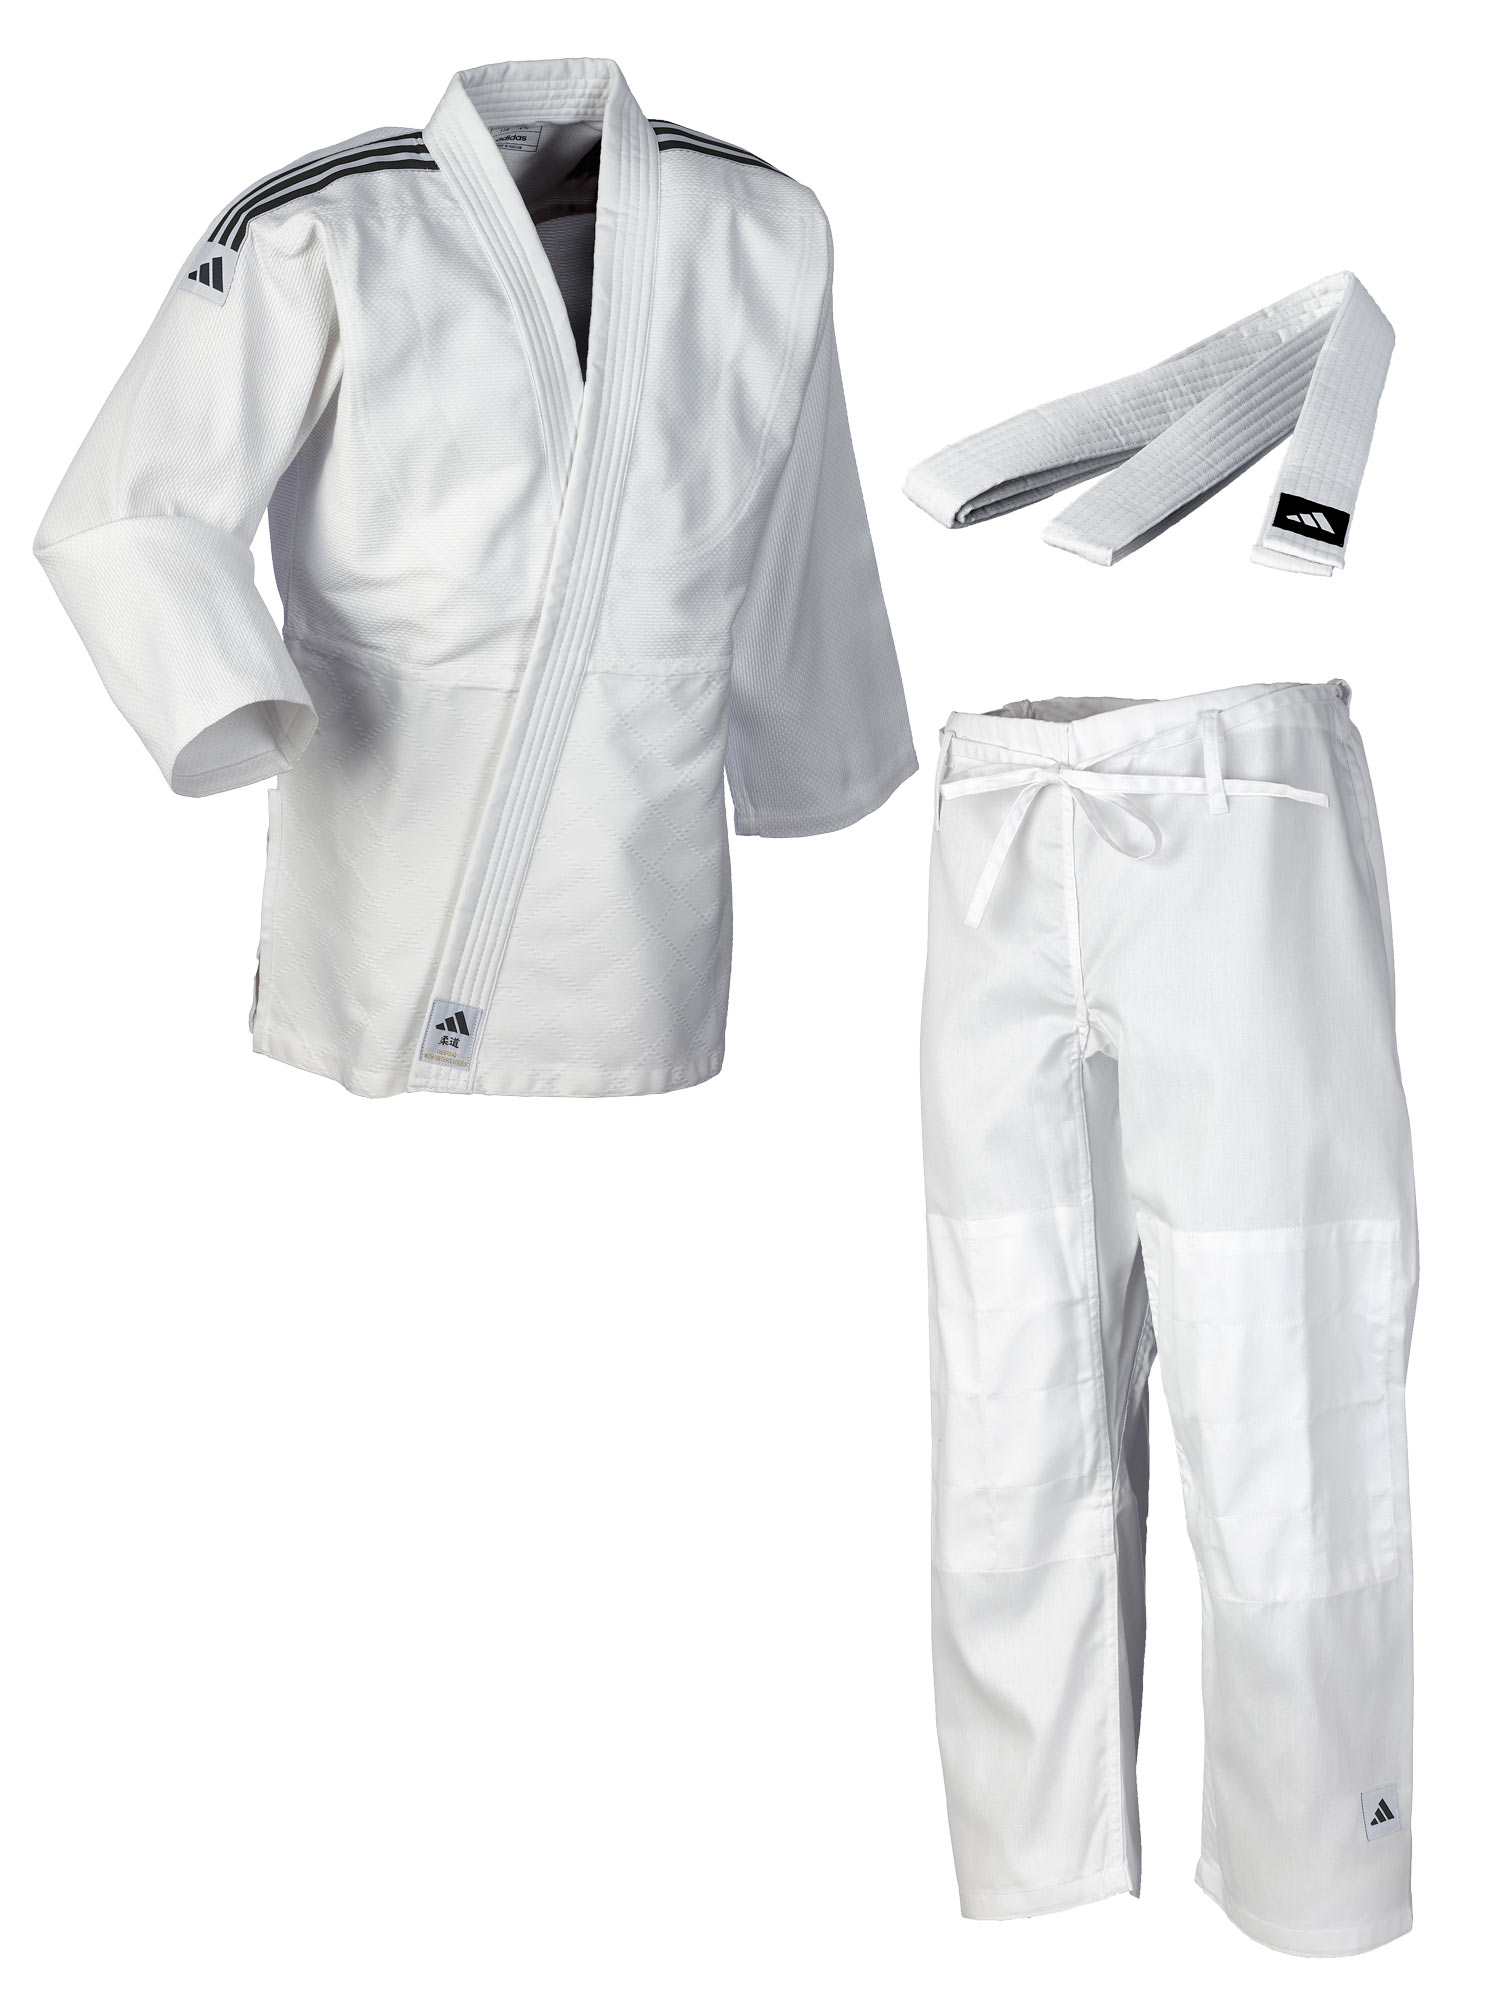 Adidas Judo-Anzug Club weiss/schwarze Streifen, J350